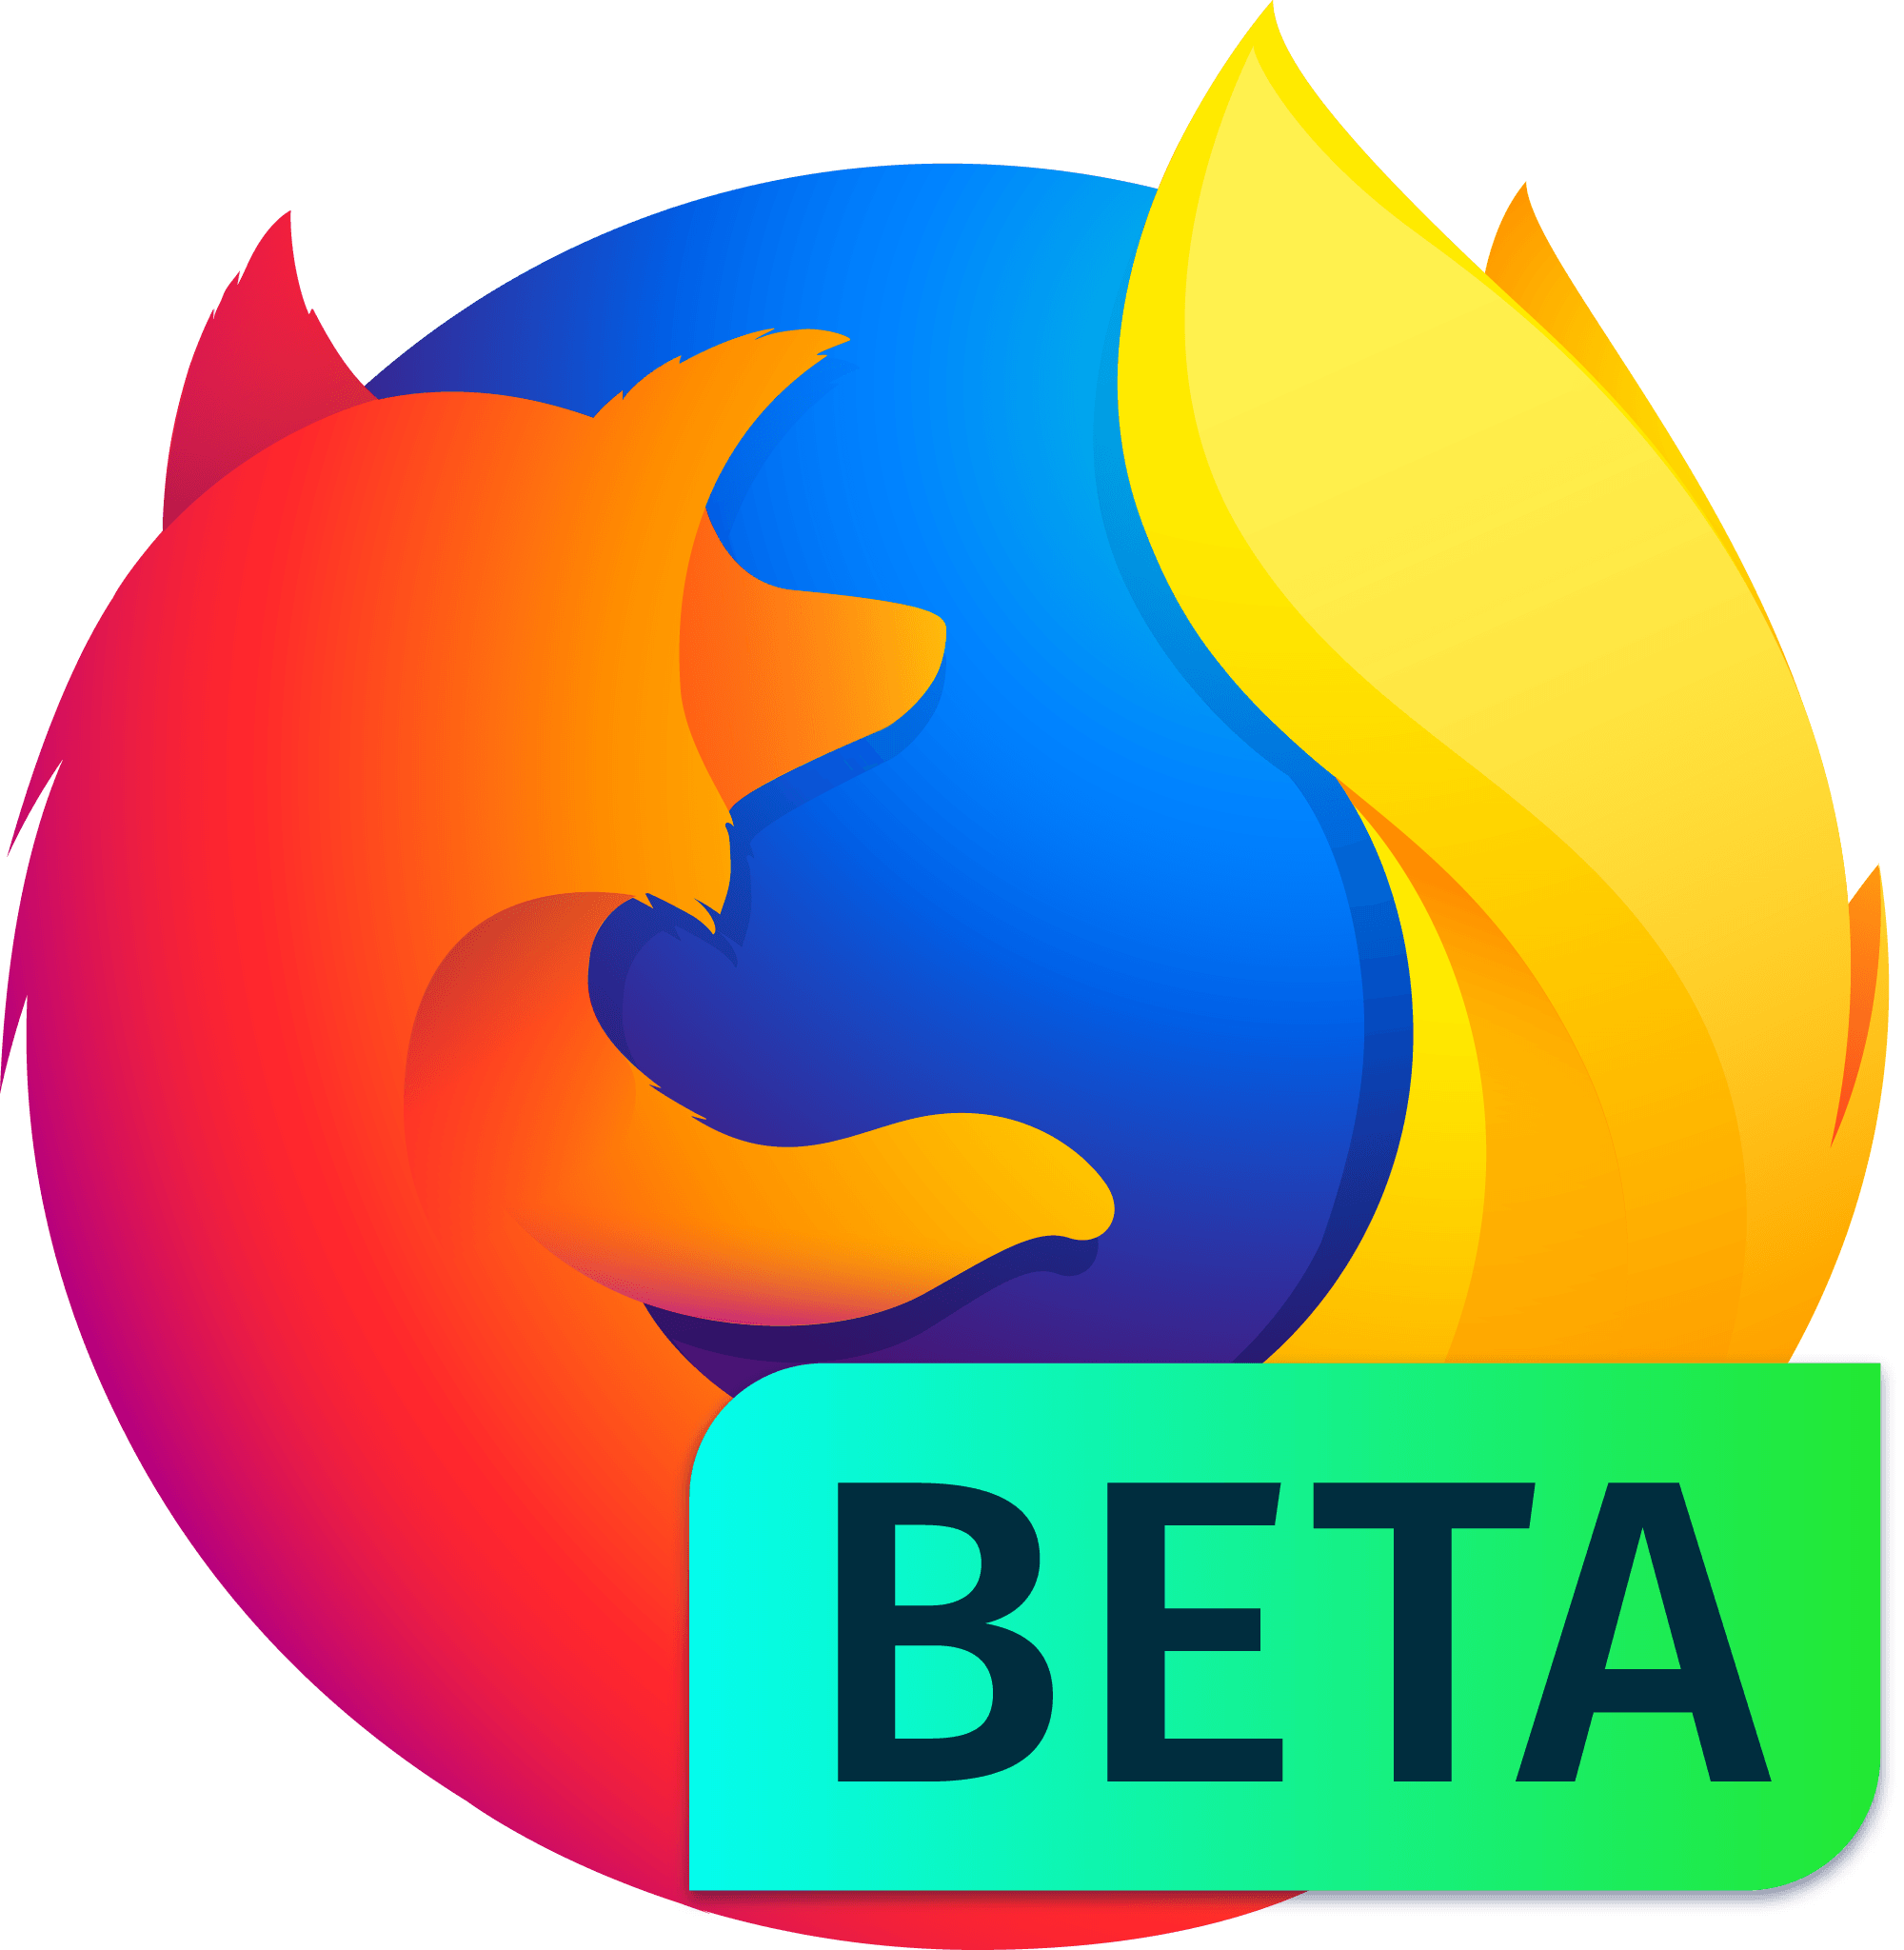 Beta Logo - Product Identity Assets